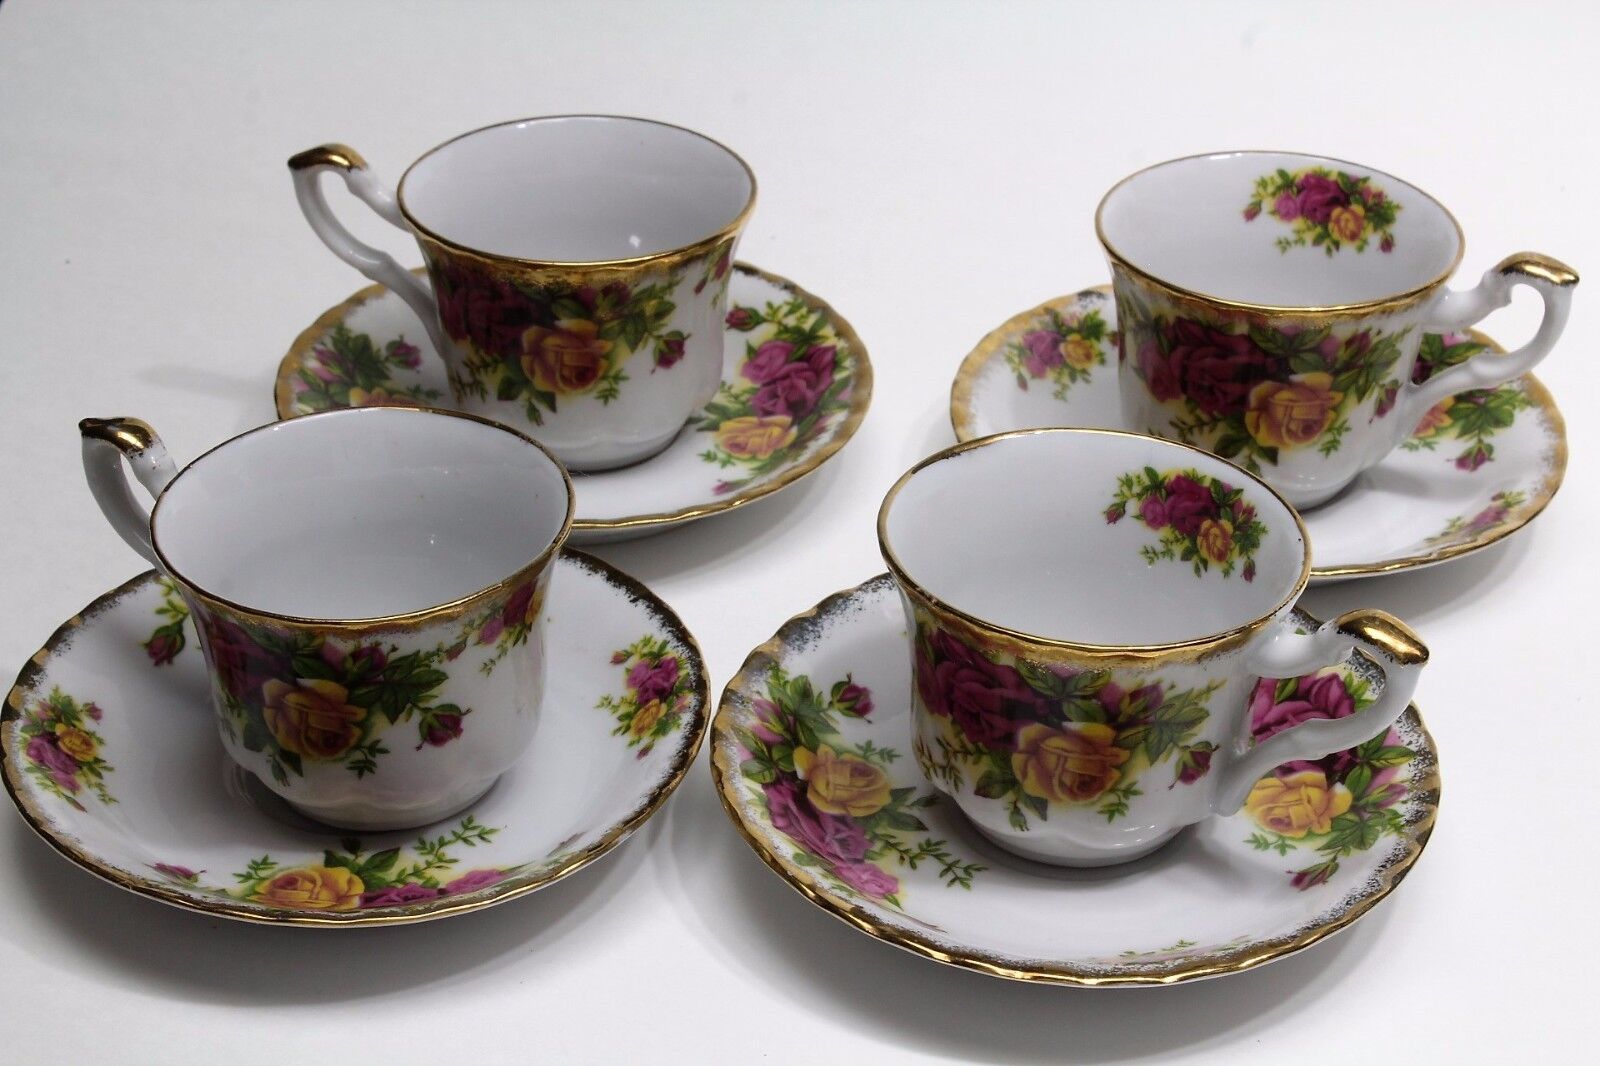 Arpo Curtea de Arges Roses Porcelain Cup & Saucer Set of Four Romania Vintage